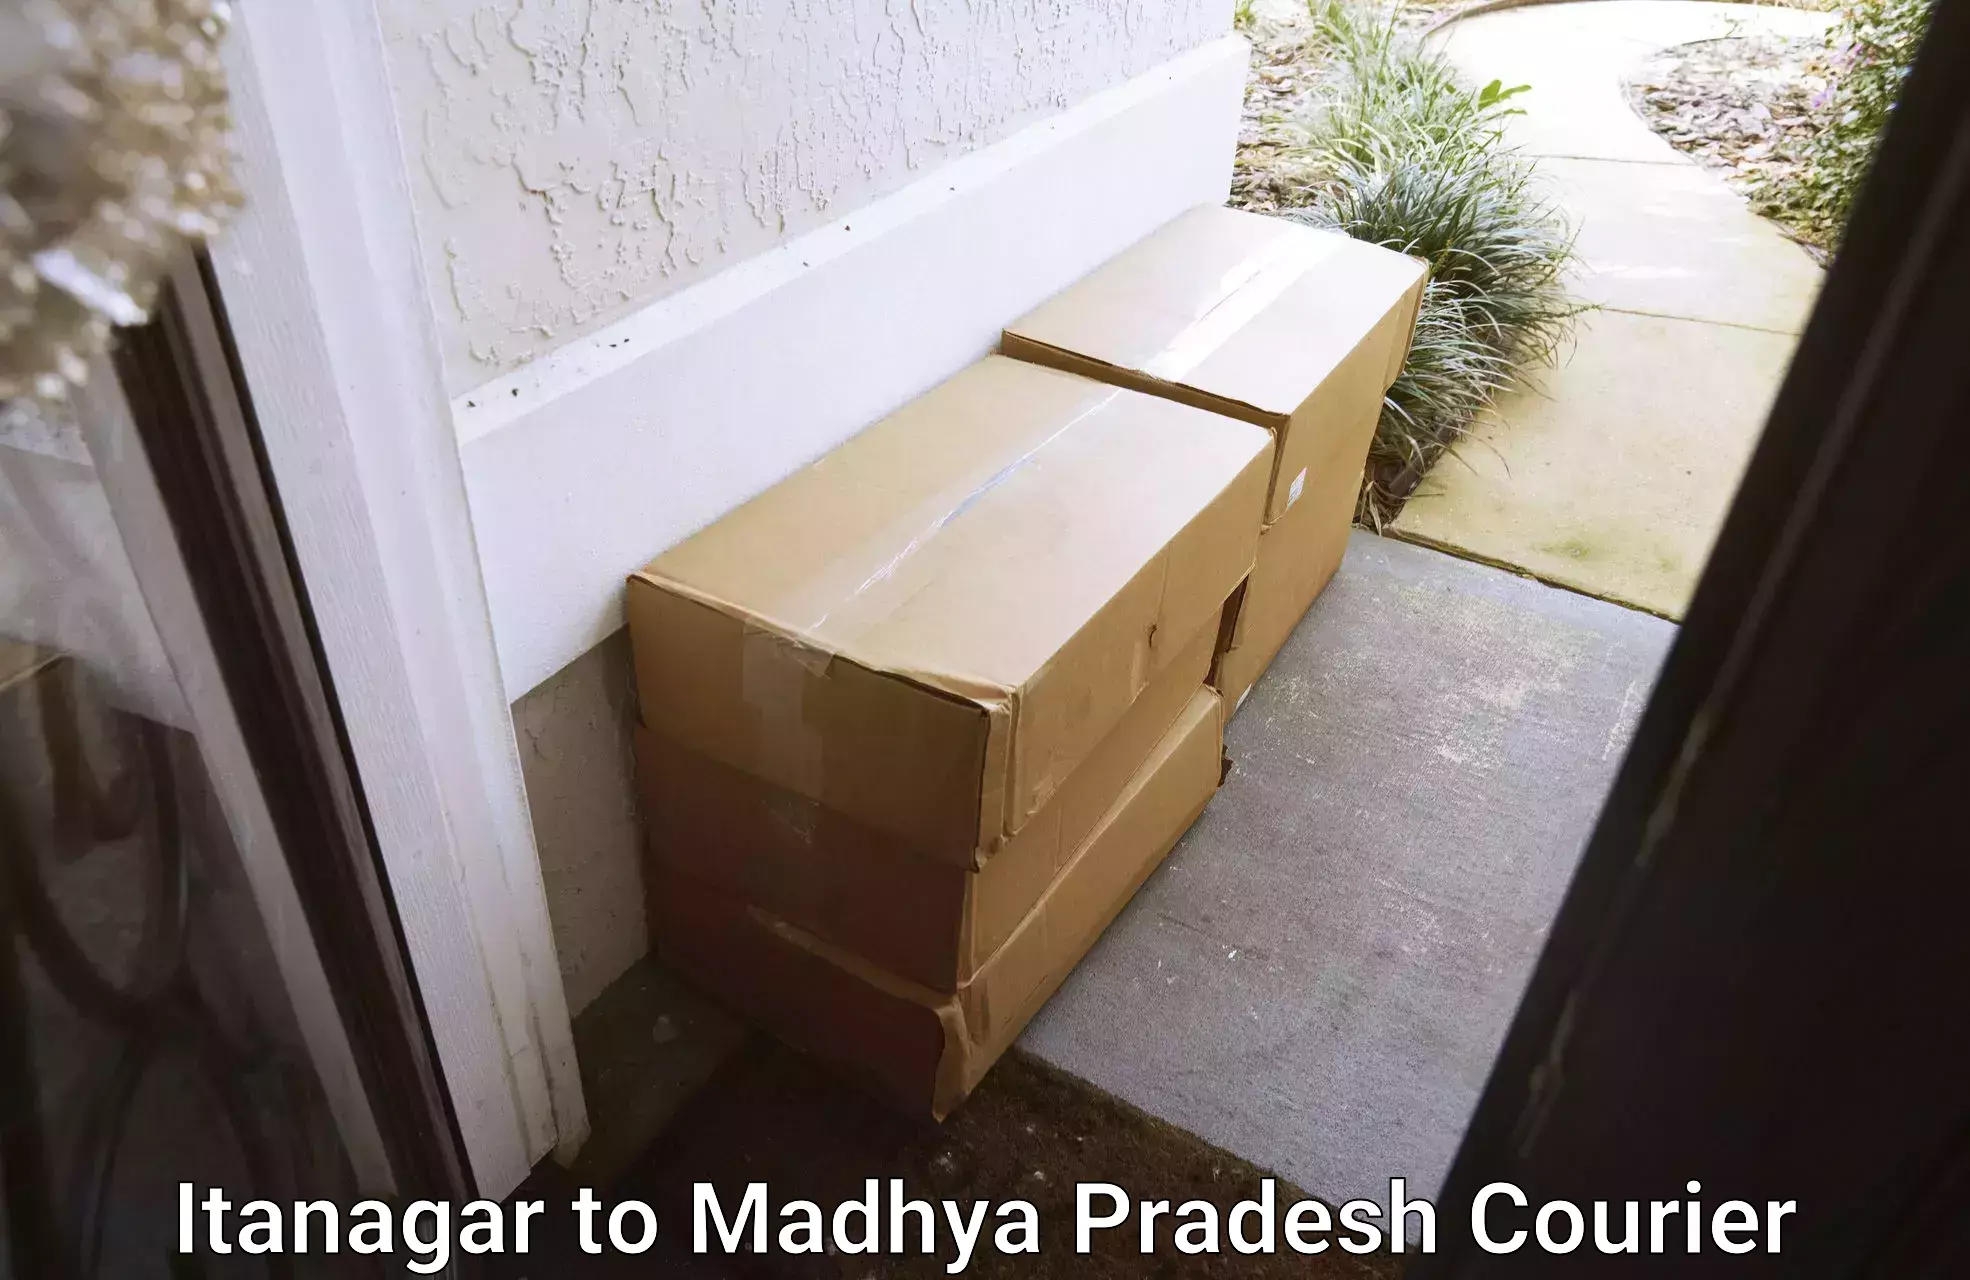 Courier service comparison Itanagar to Ghatiya